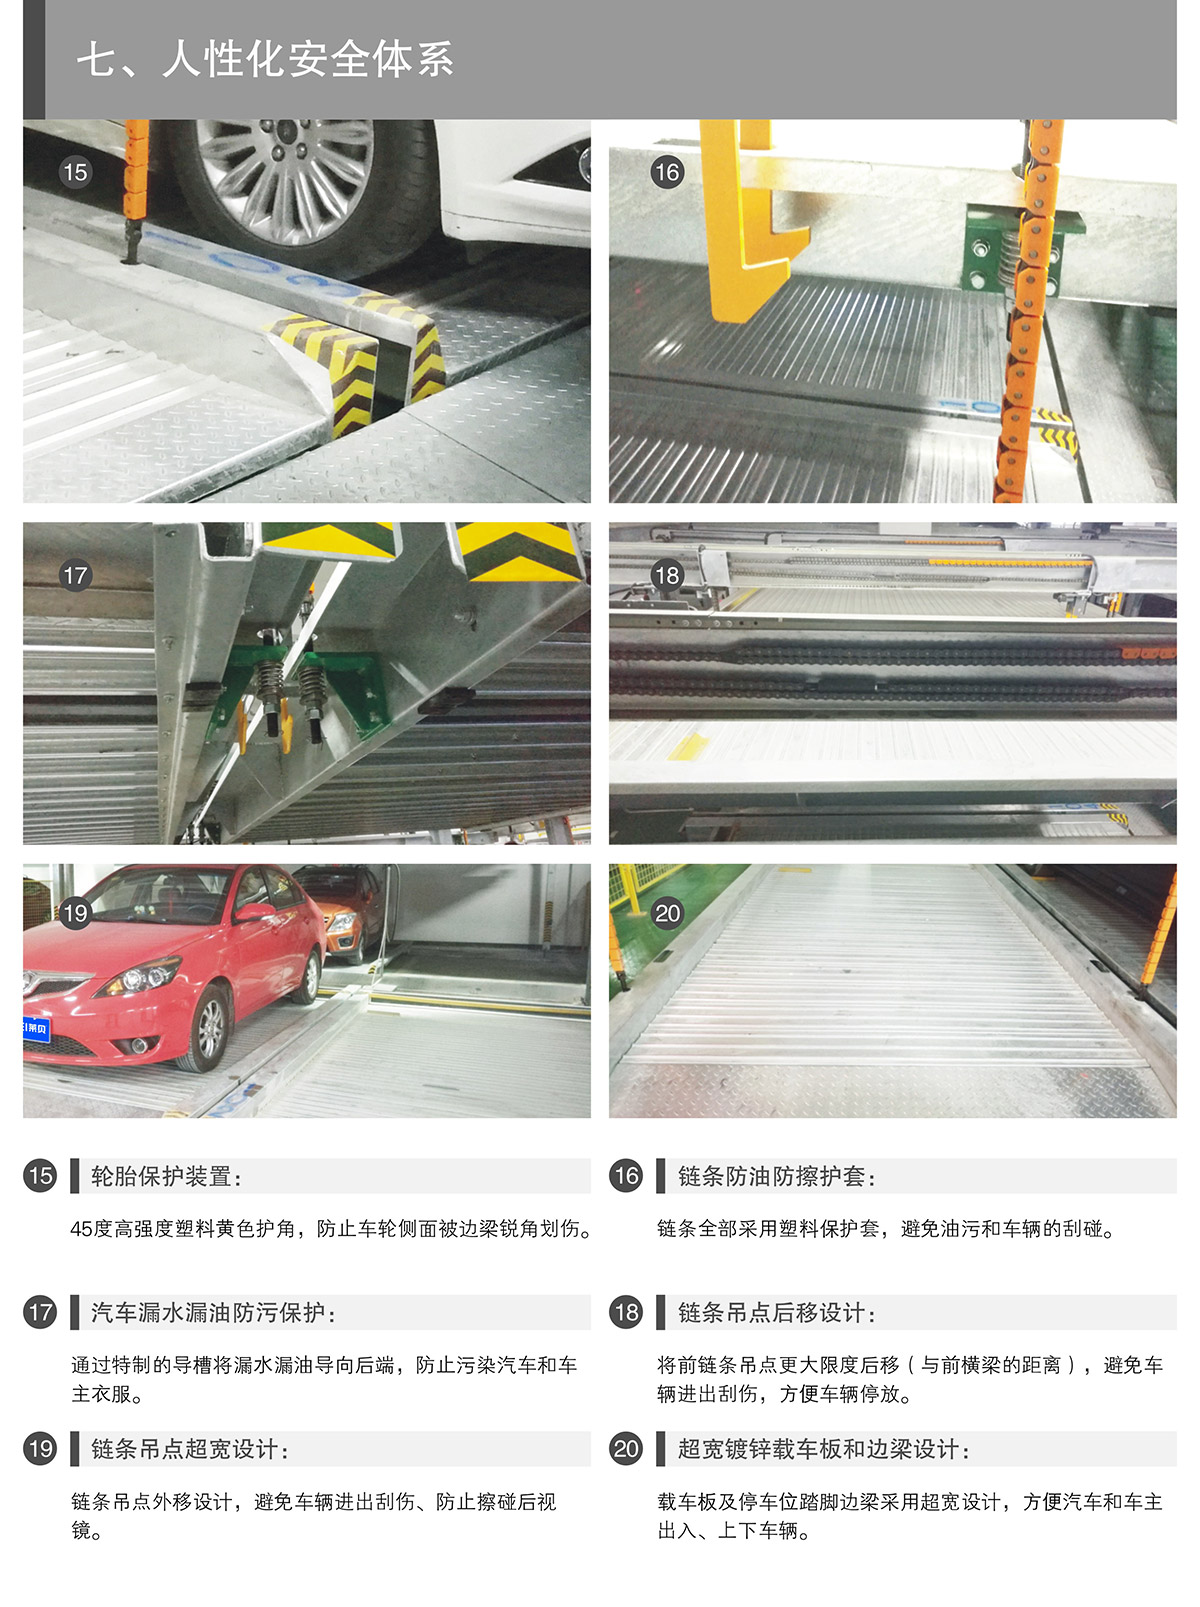 四川PSH2两层升降横移类机械式立体停车设备人性化安全体系.jpg